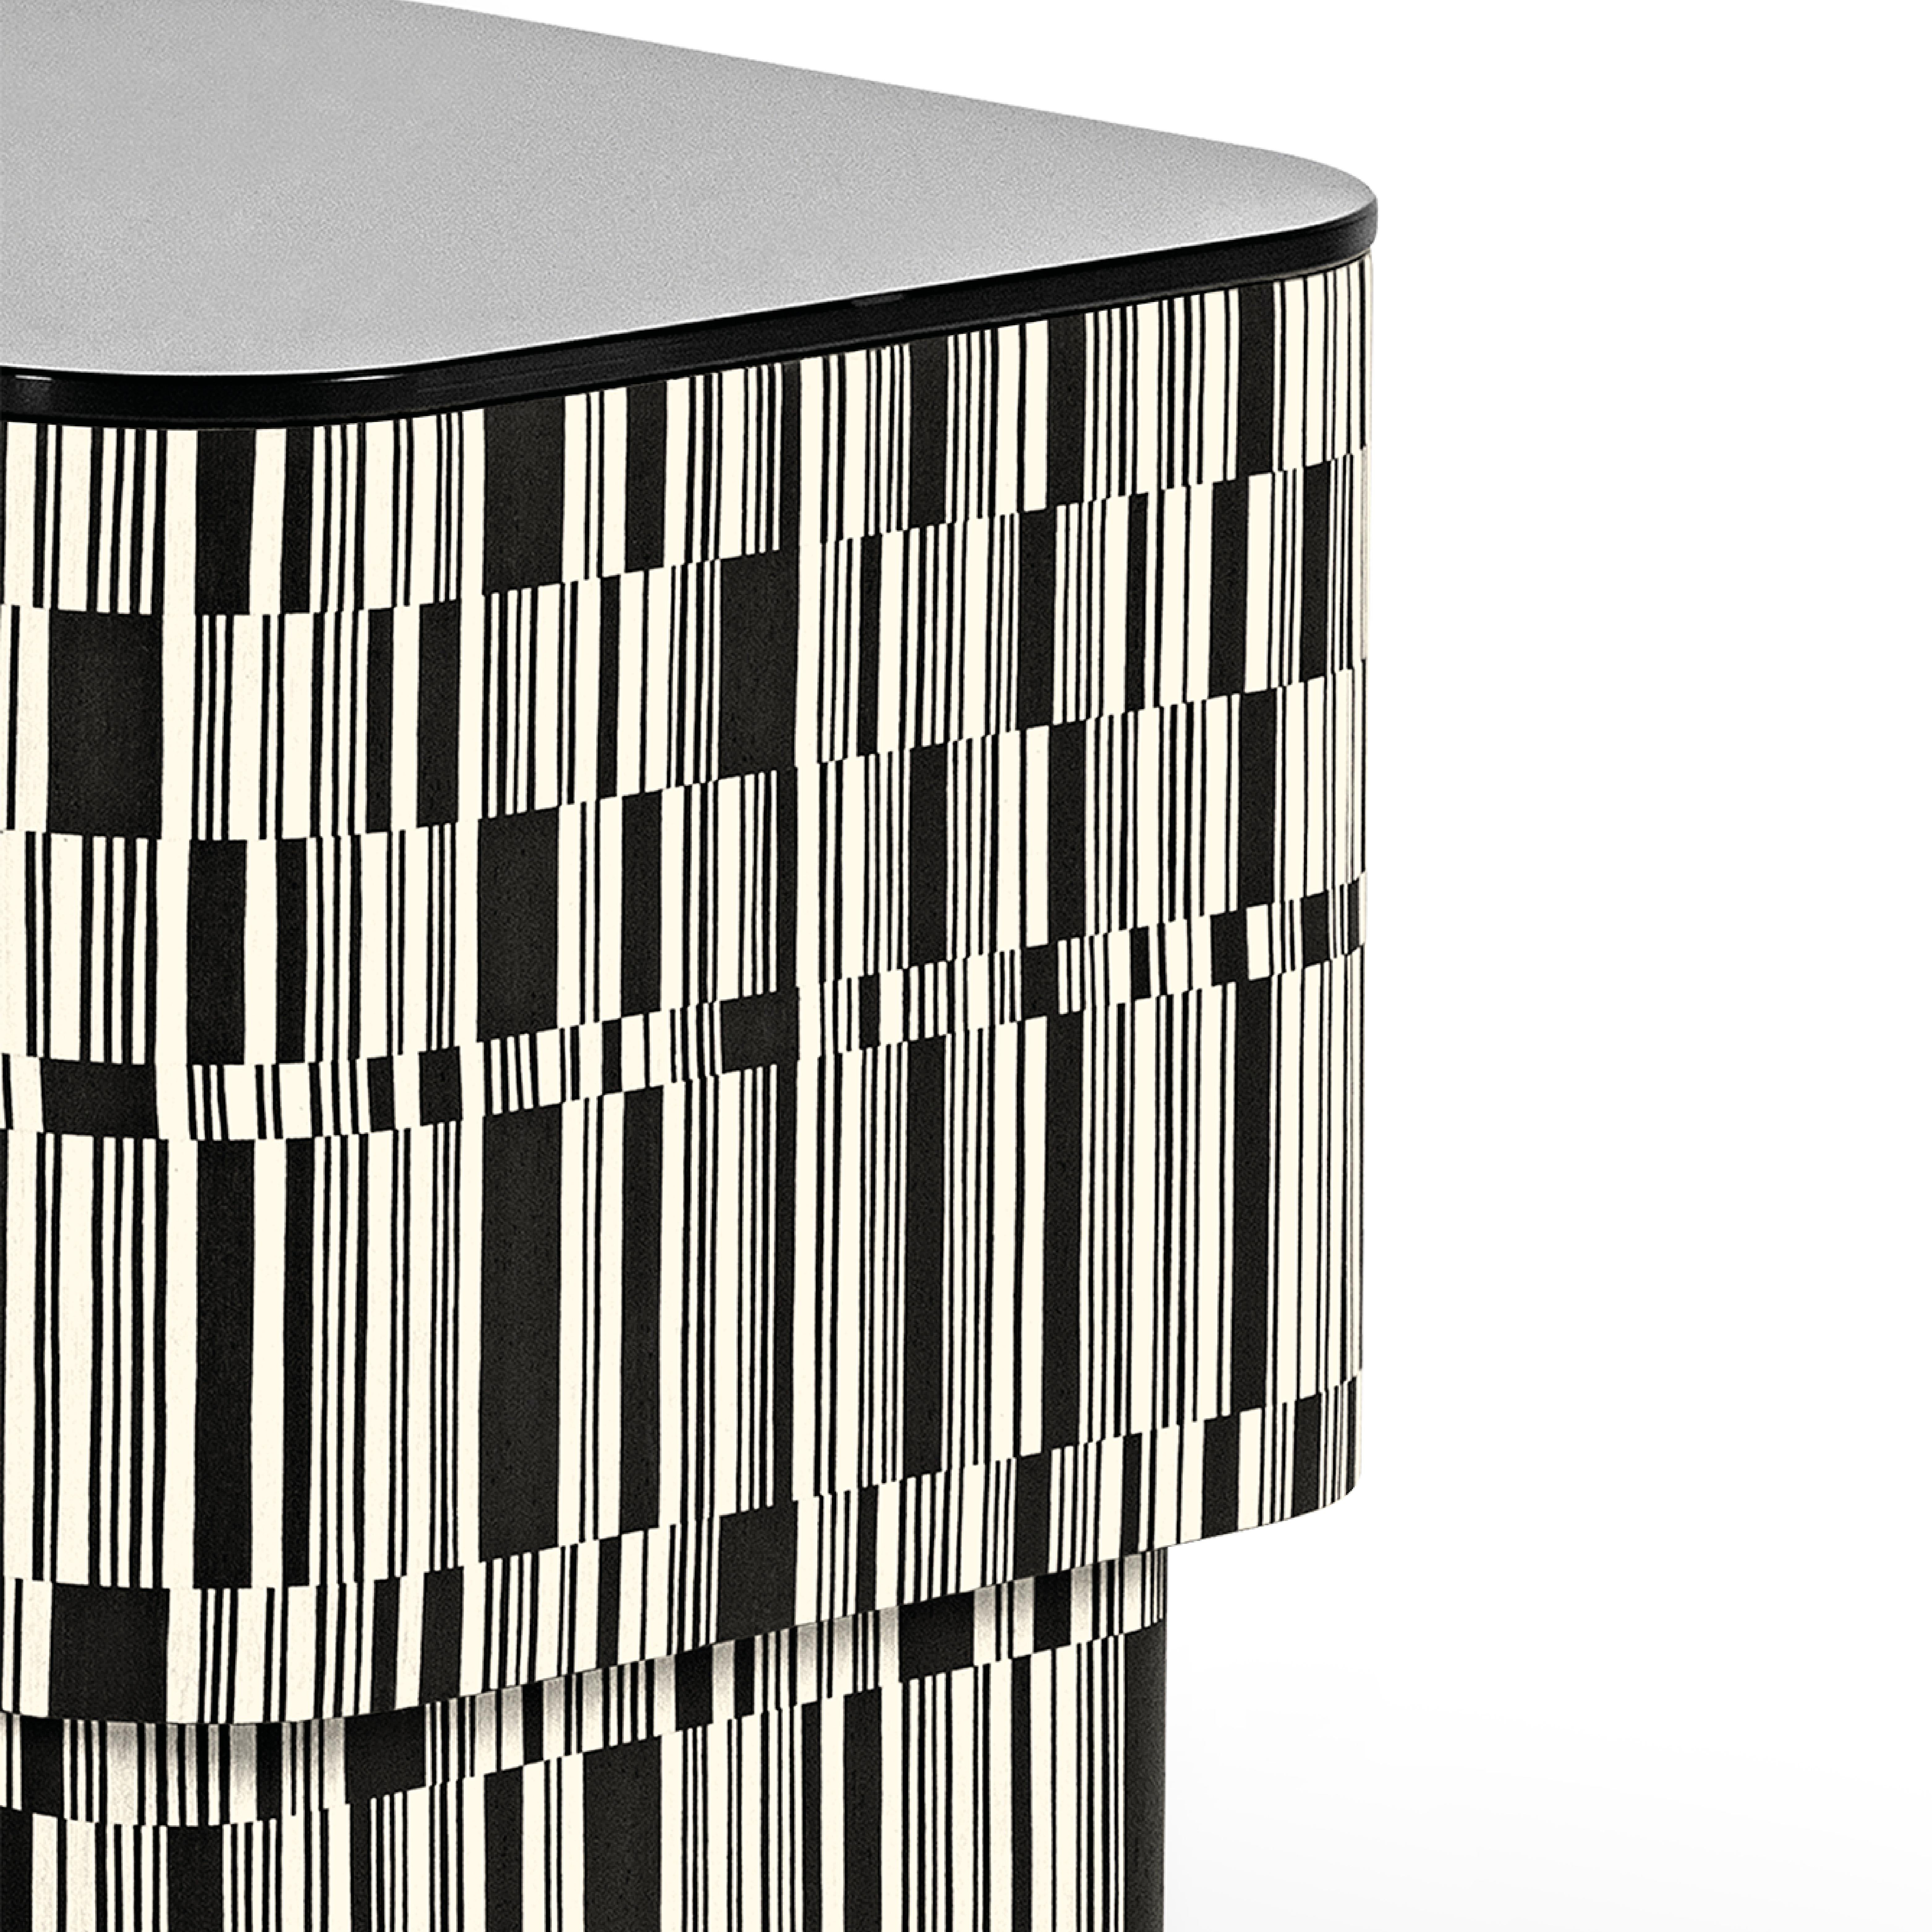 La structure de la table d'appoint Enigma est revêtue de bois, traité avec une incrustation en fil croisé avec des nuances blanches et noires qui s'alternent de manière irrégulière. Il présente une finition Matrix mate et un plateau en verre noir.